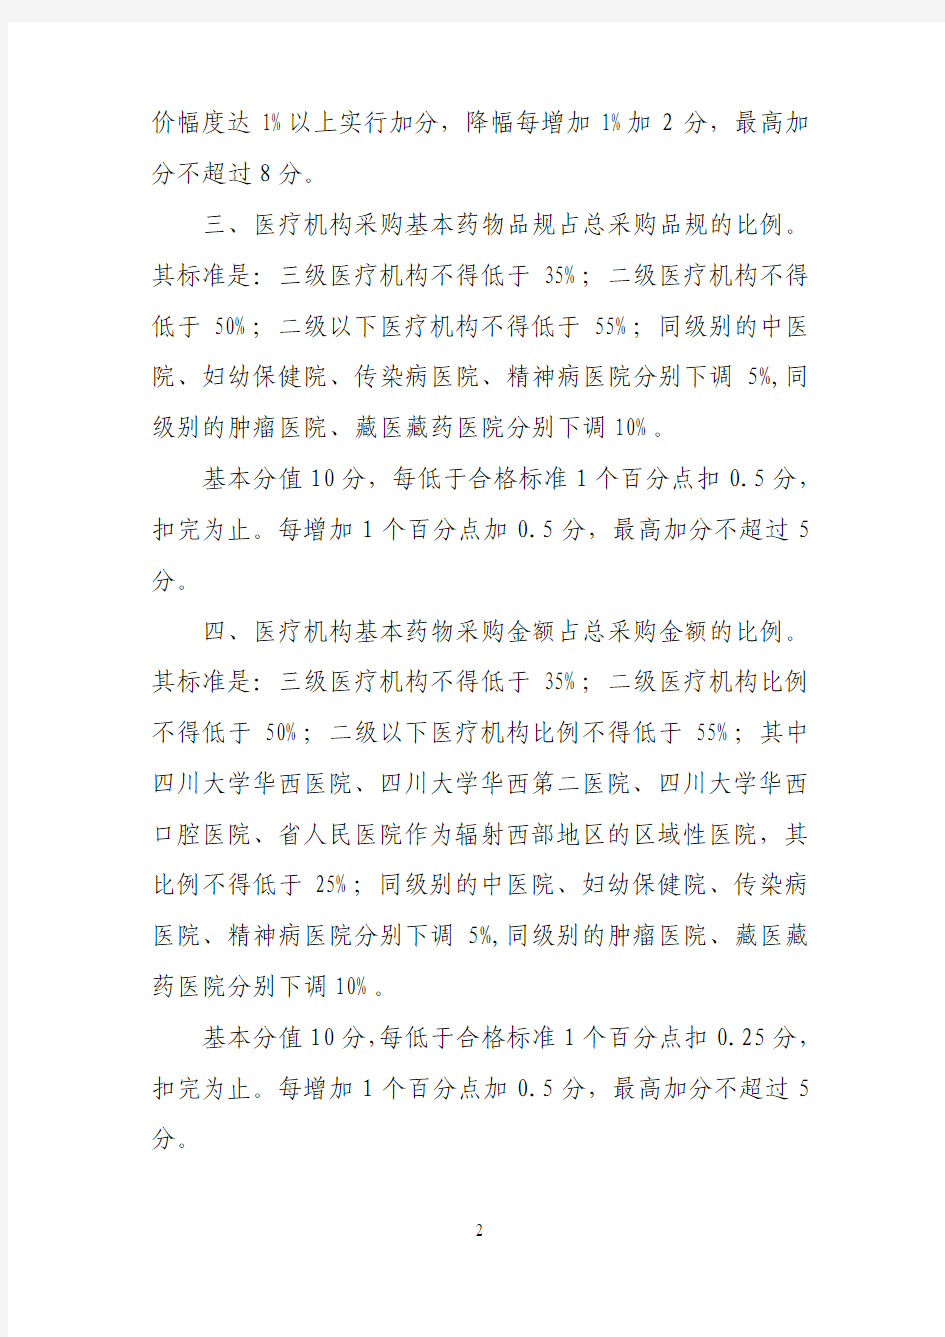 四川省医疗机构药品阳光采购管理暂行办法实施细则2013年版